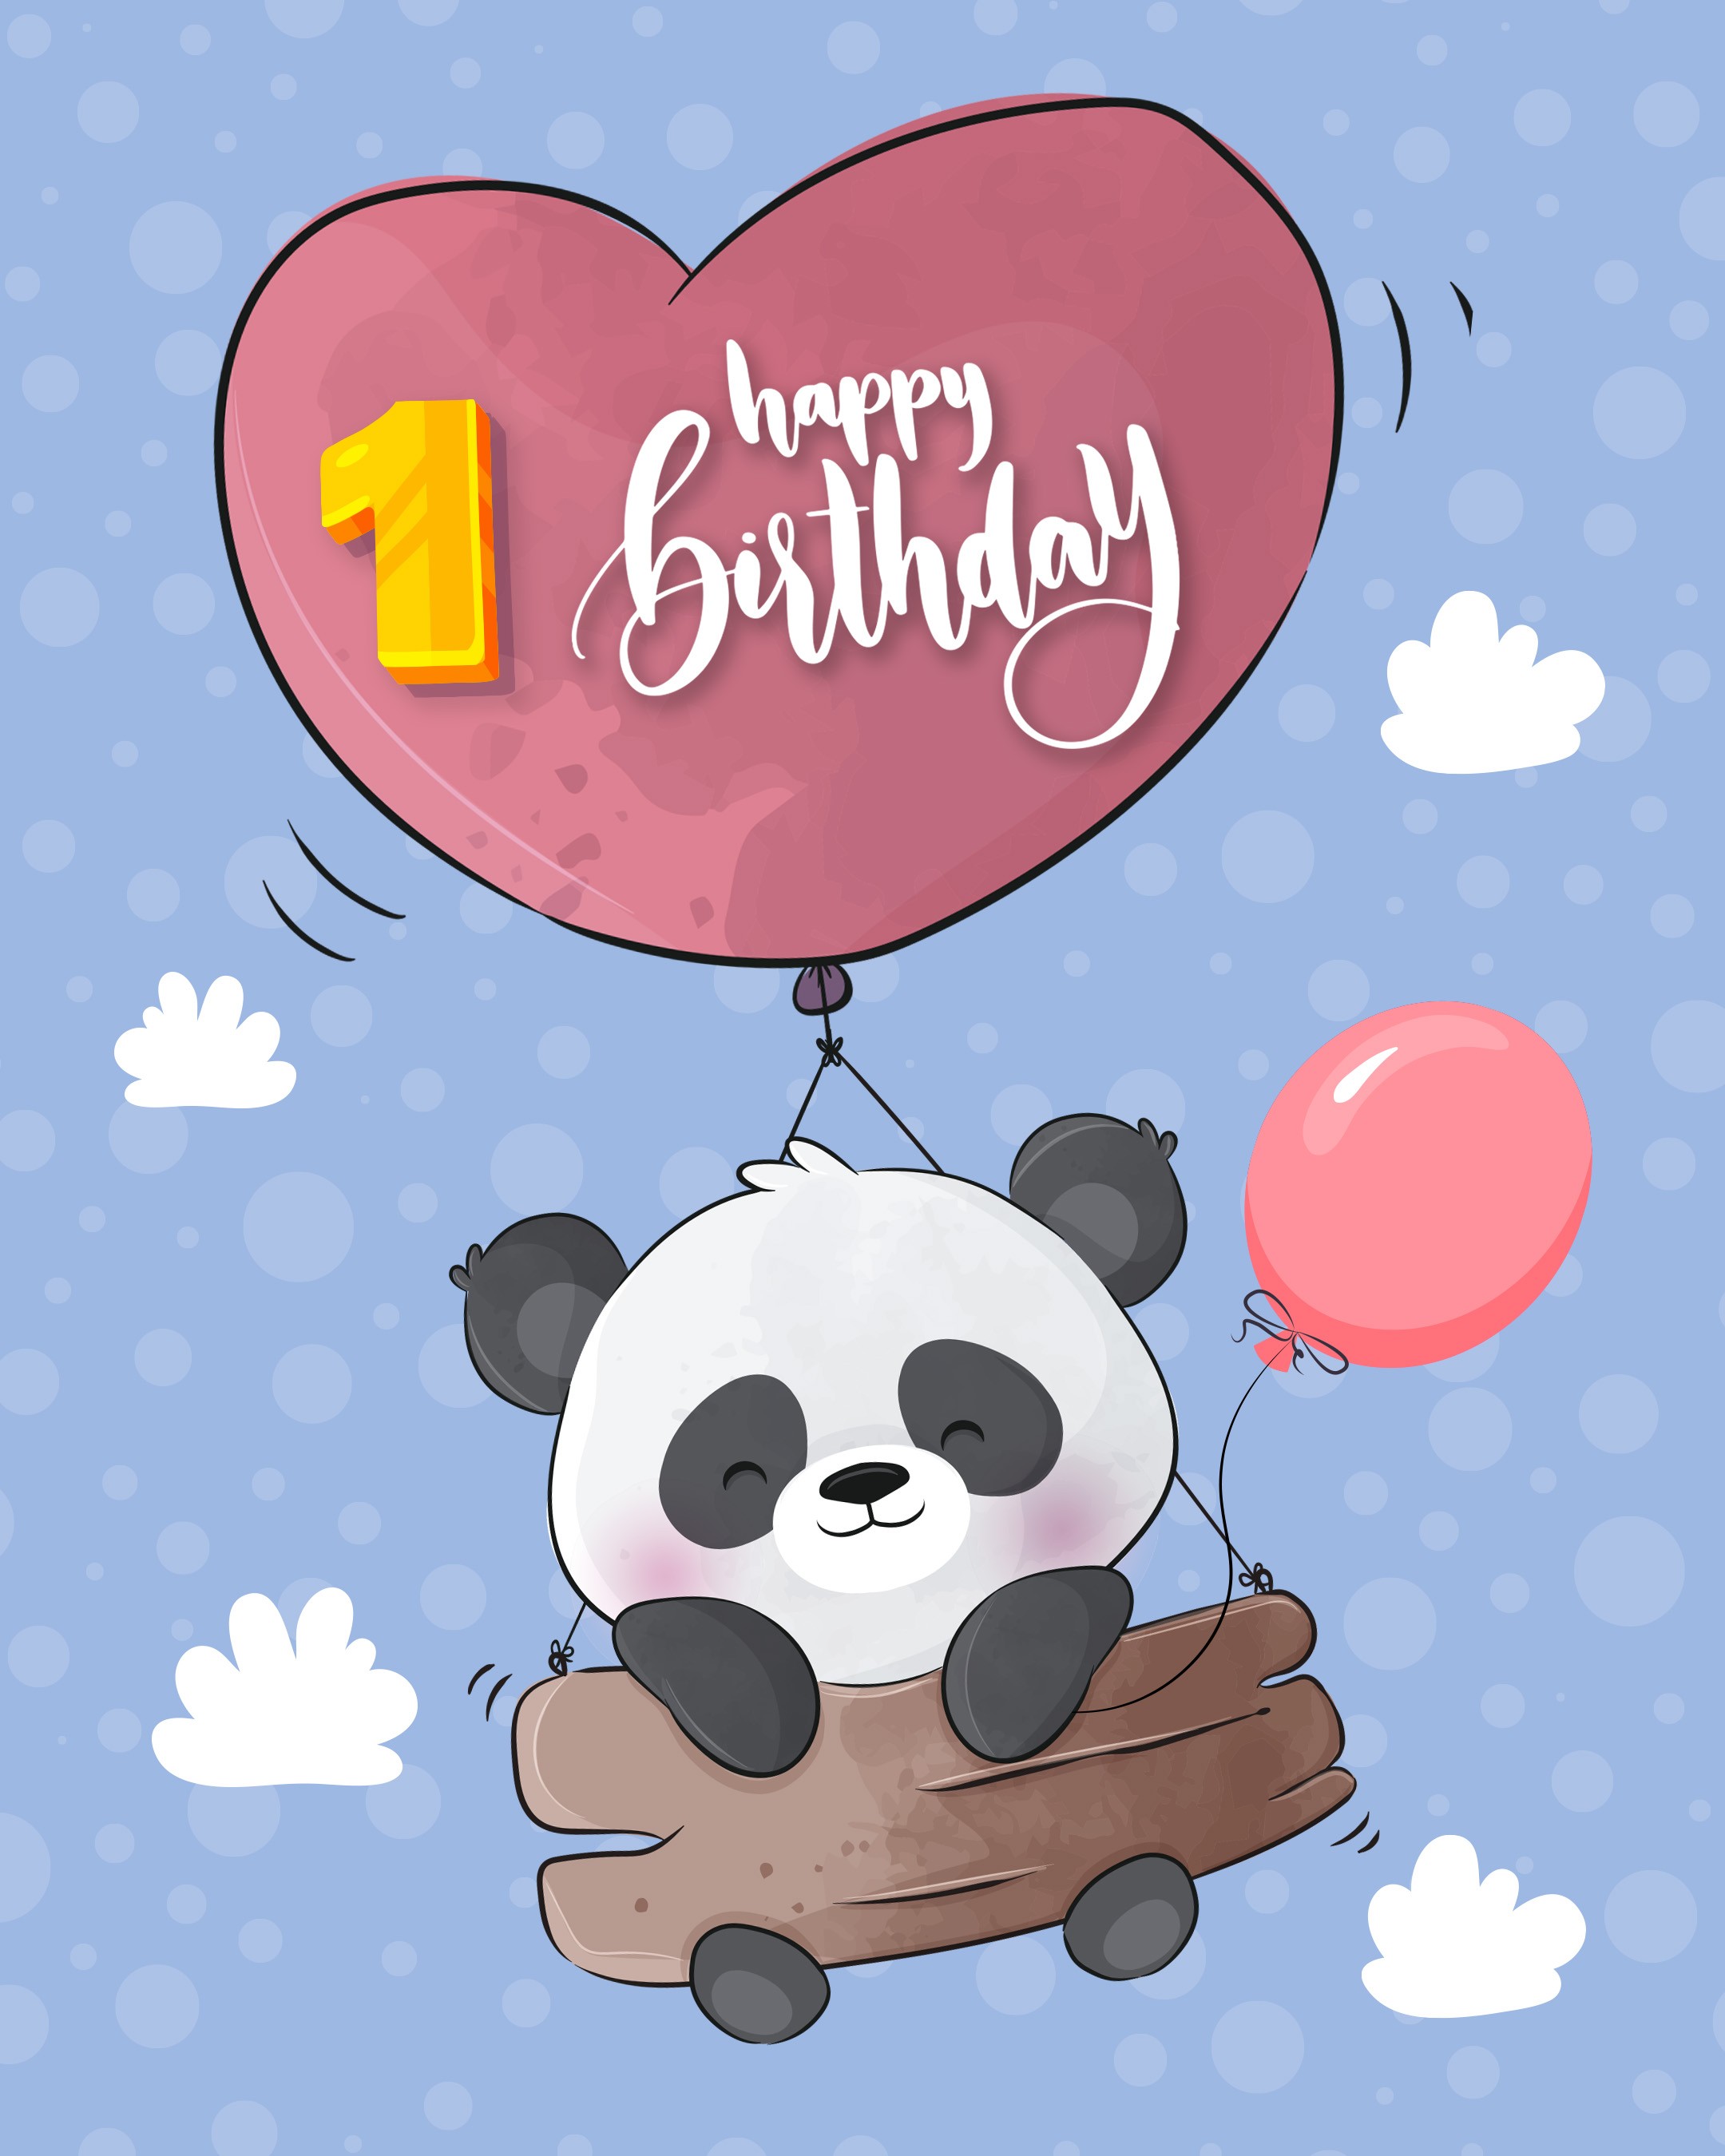 Free 1st Year Happy Birthday Image With Panda - birthdayimg.com